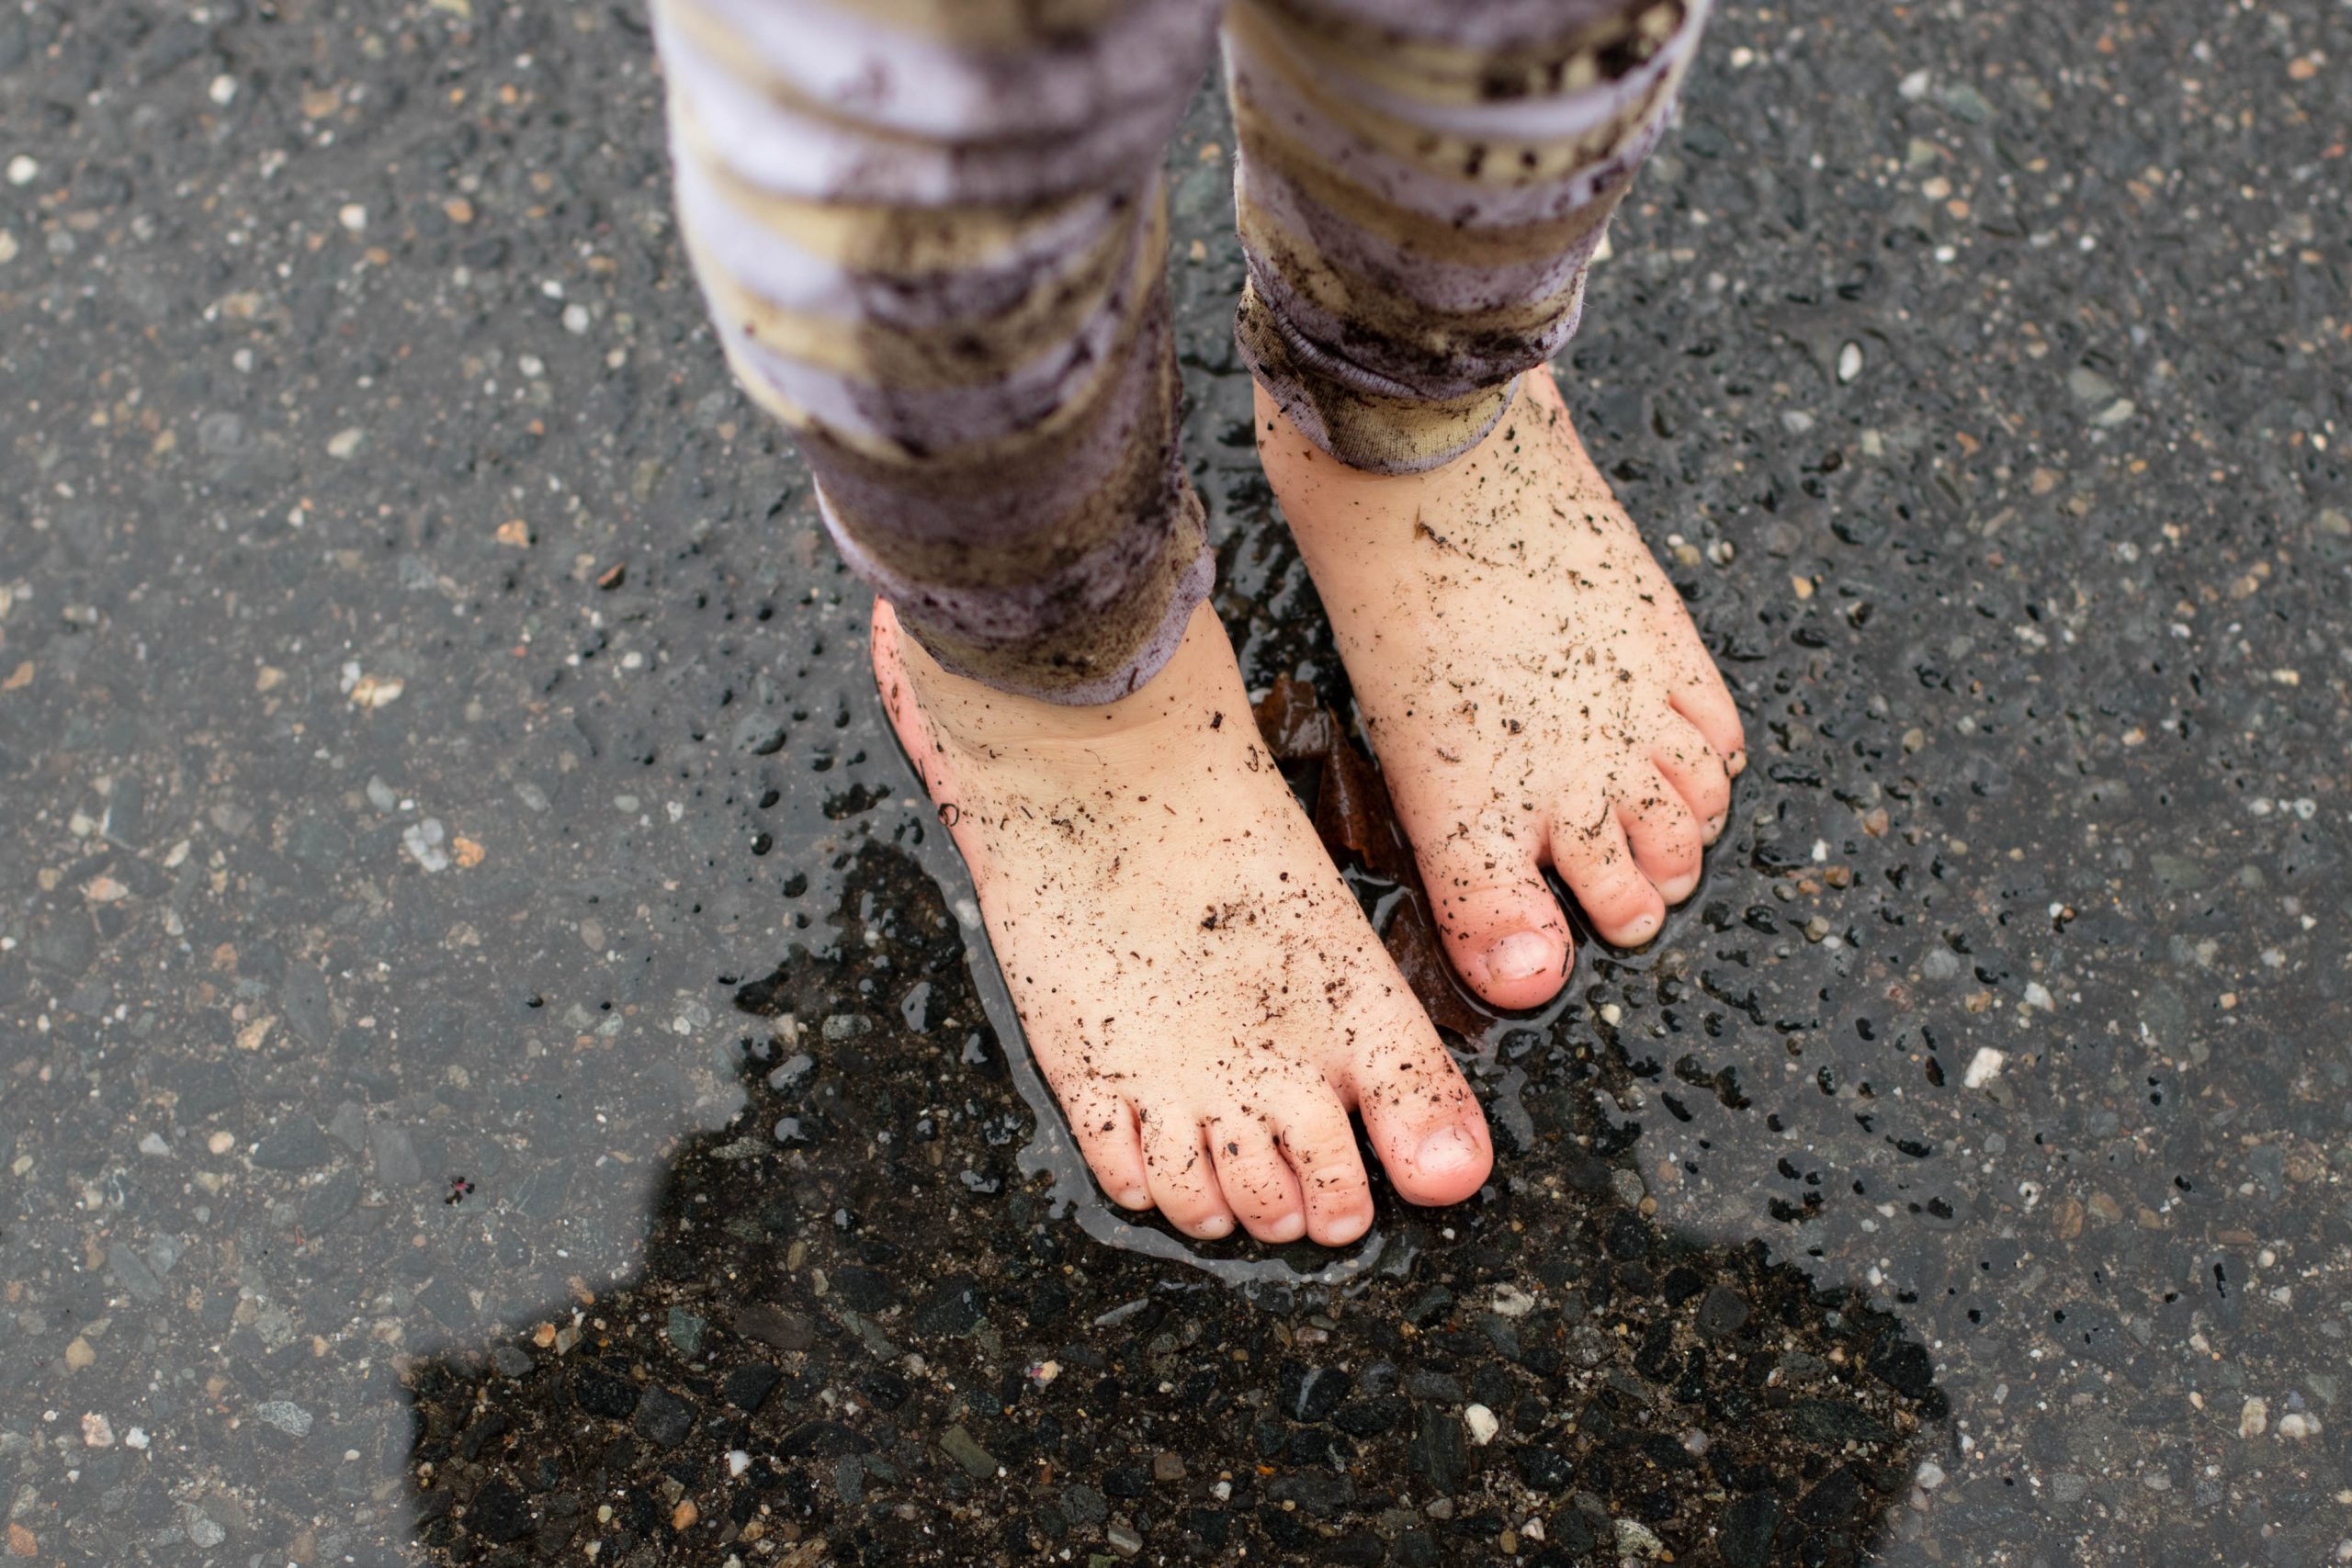 lover la earth day in the rain muddy bare feet